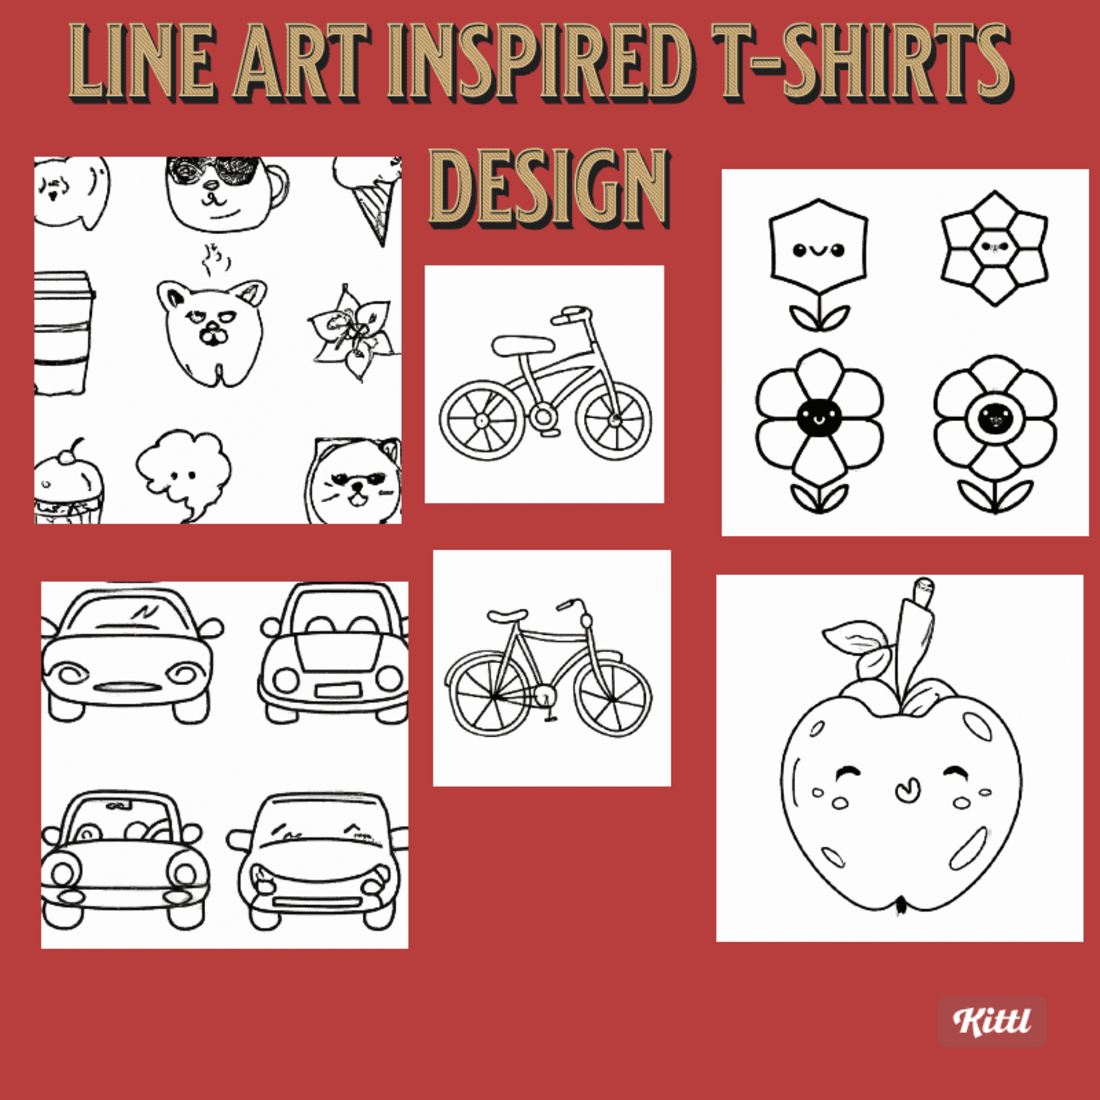 Dot T-Shirts, Unique Designs